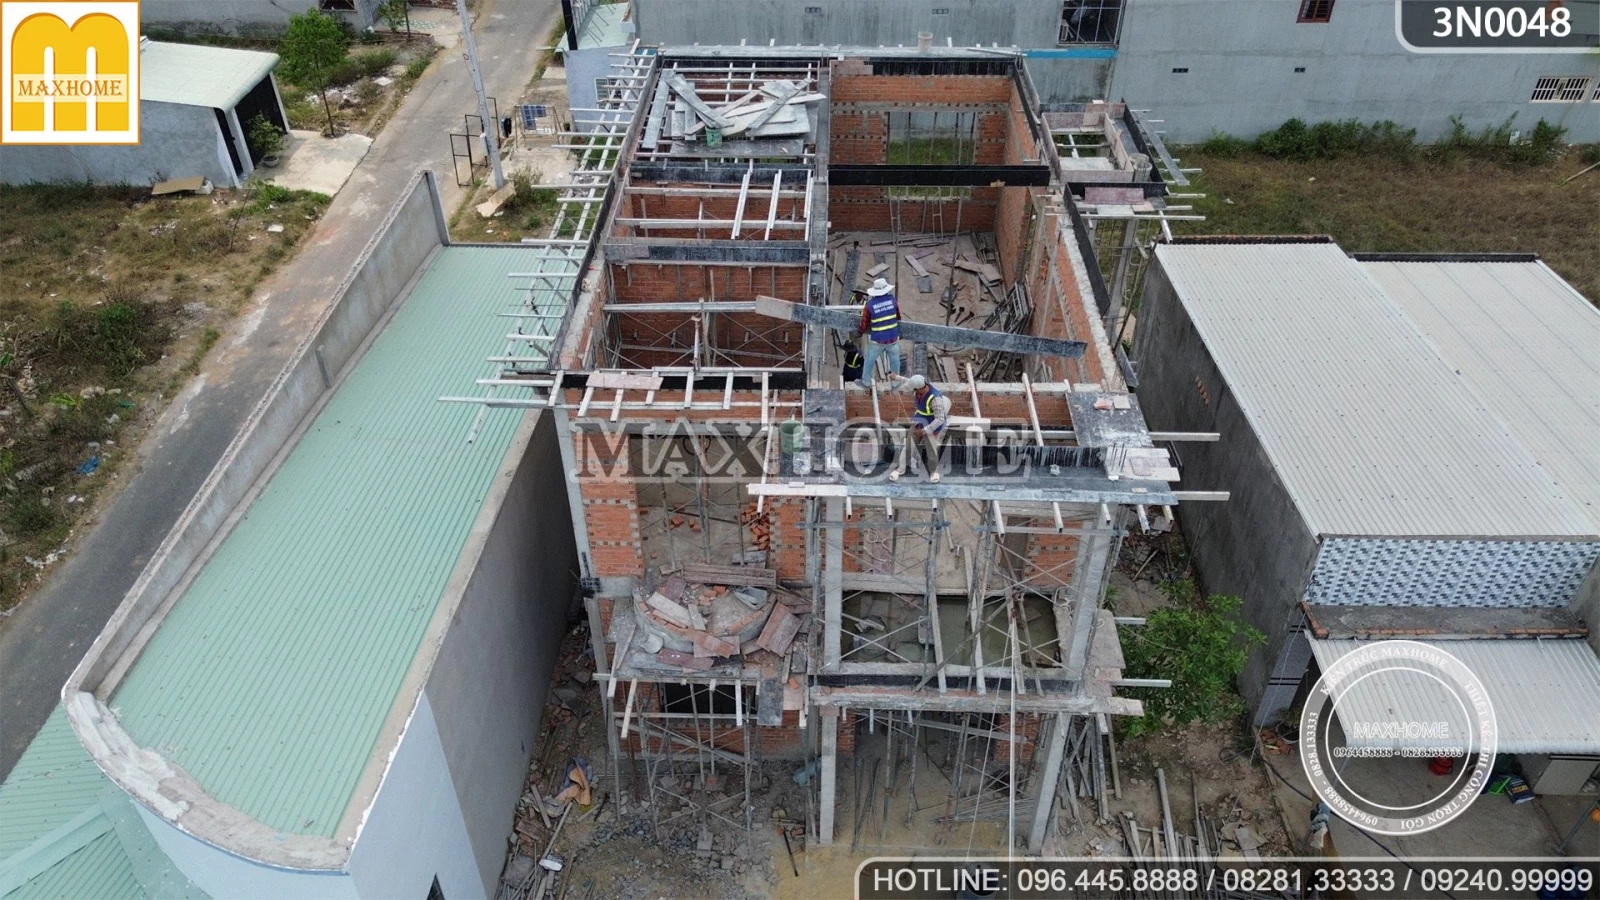 Thanh tra Maxhome kiểm tra tiến độ chất lượng công trình nhà 2 tầng mái Nhật | MH03215